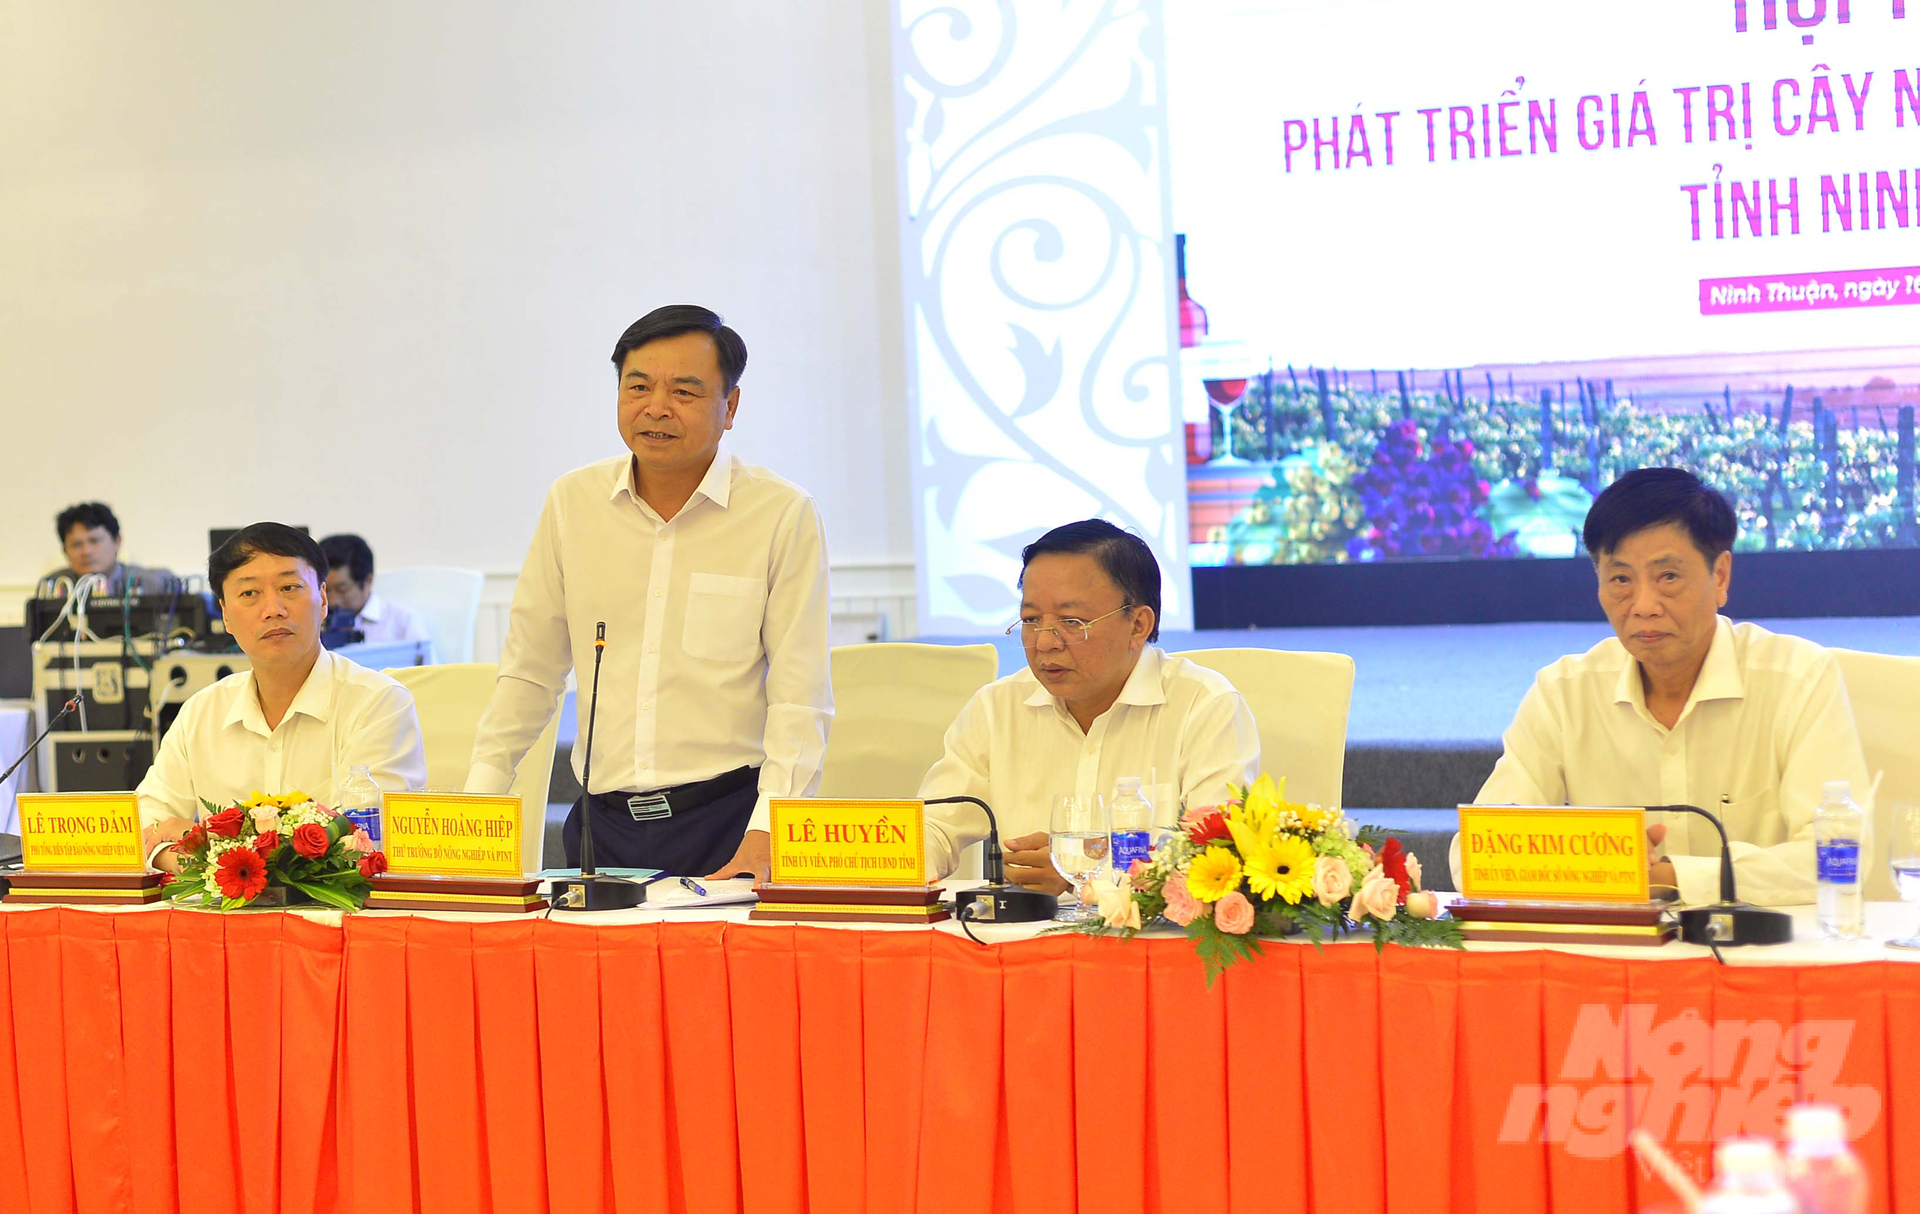 Tại cuộc hội thảo, Thứ trưởng Bộ NN-PTNT Nguyễn Hoàng Hiệp nhấn mạnh Ninh Thuận cần tăng cả giá trị, diện tích và sản lượng nho để phát triển thị trường. Ảnh: Minh Hậu.